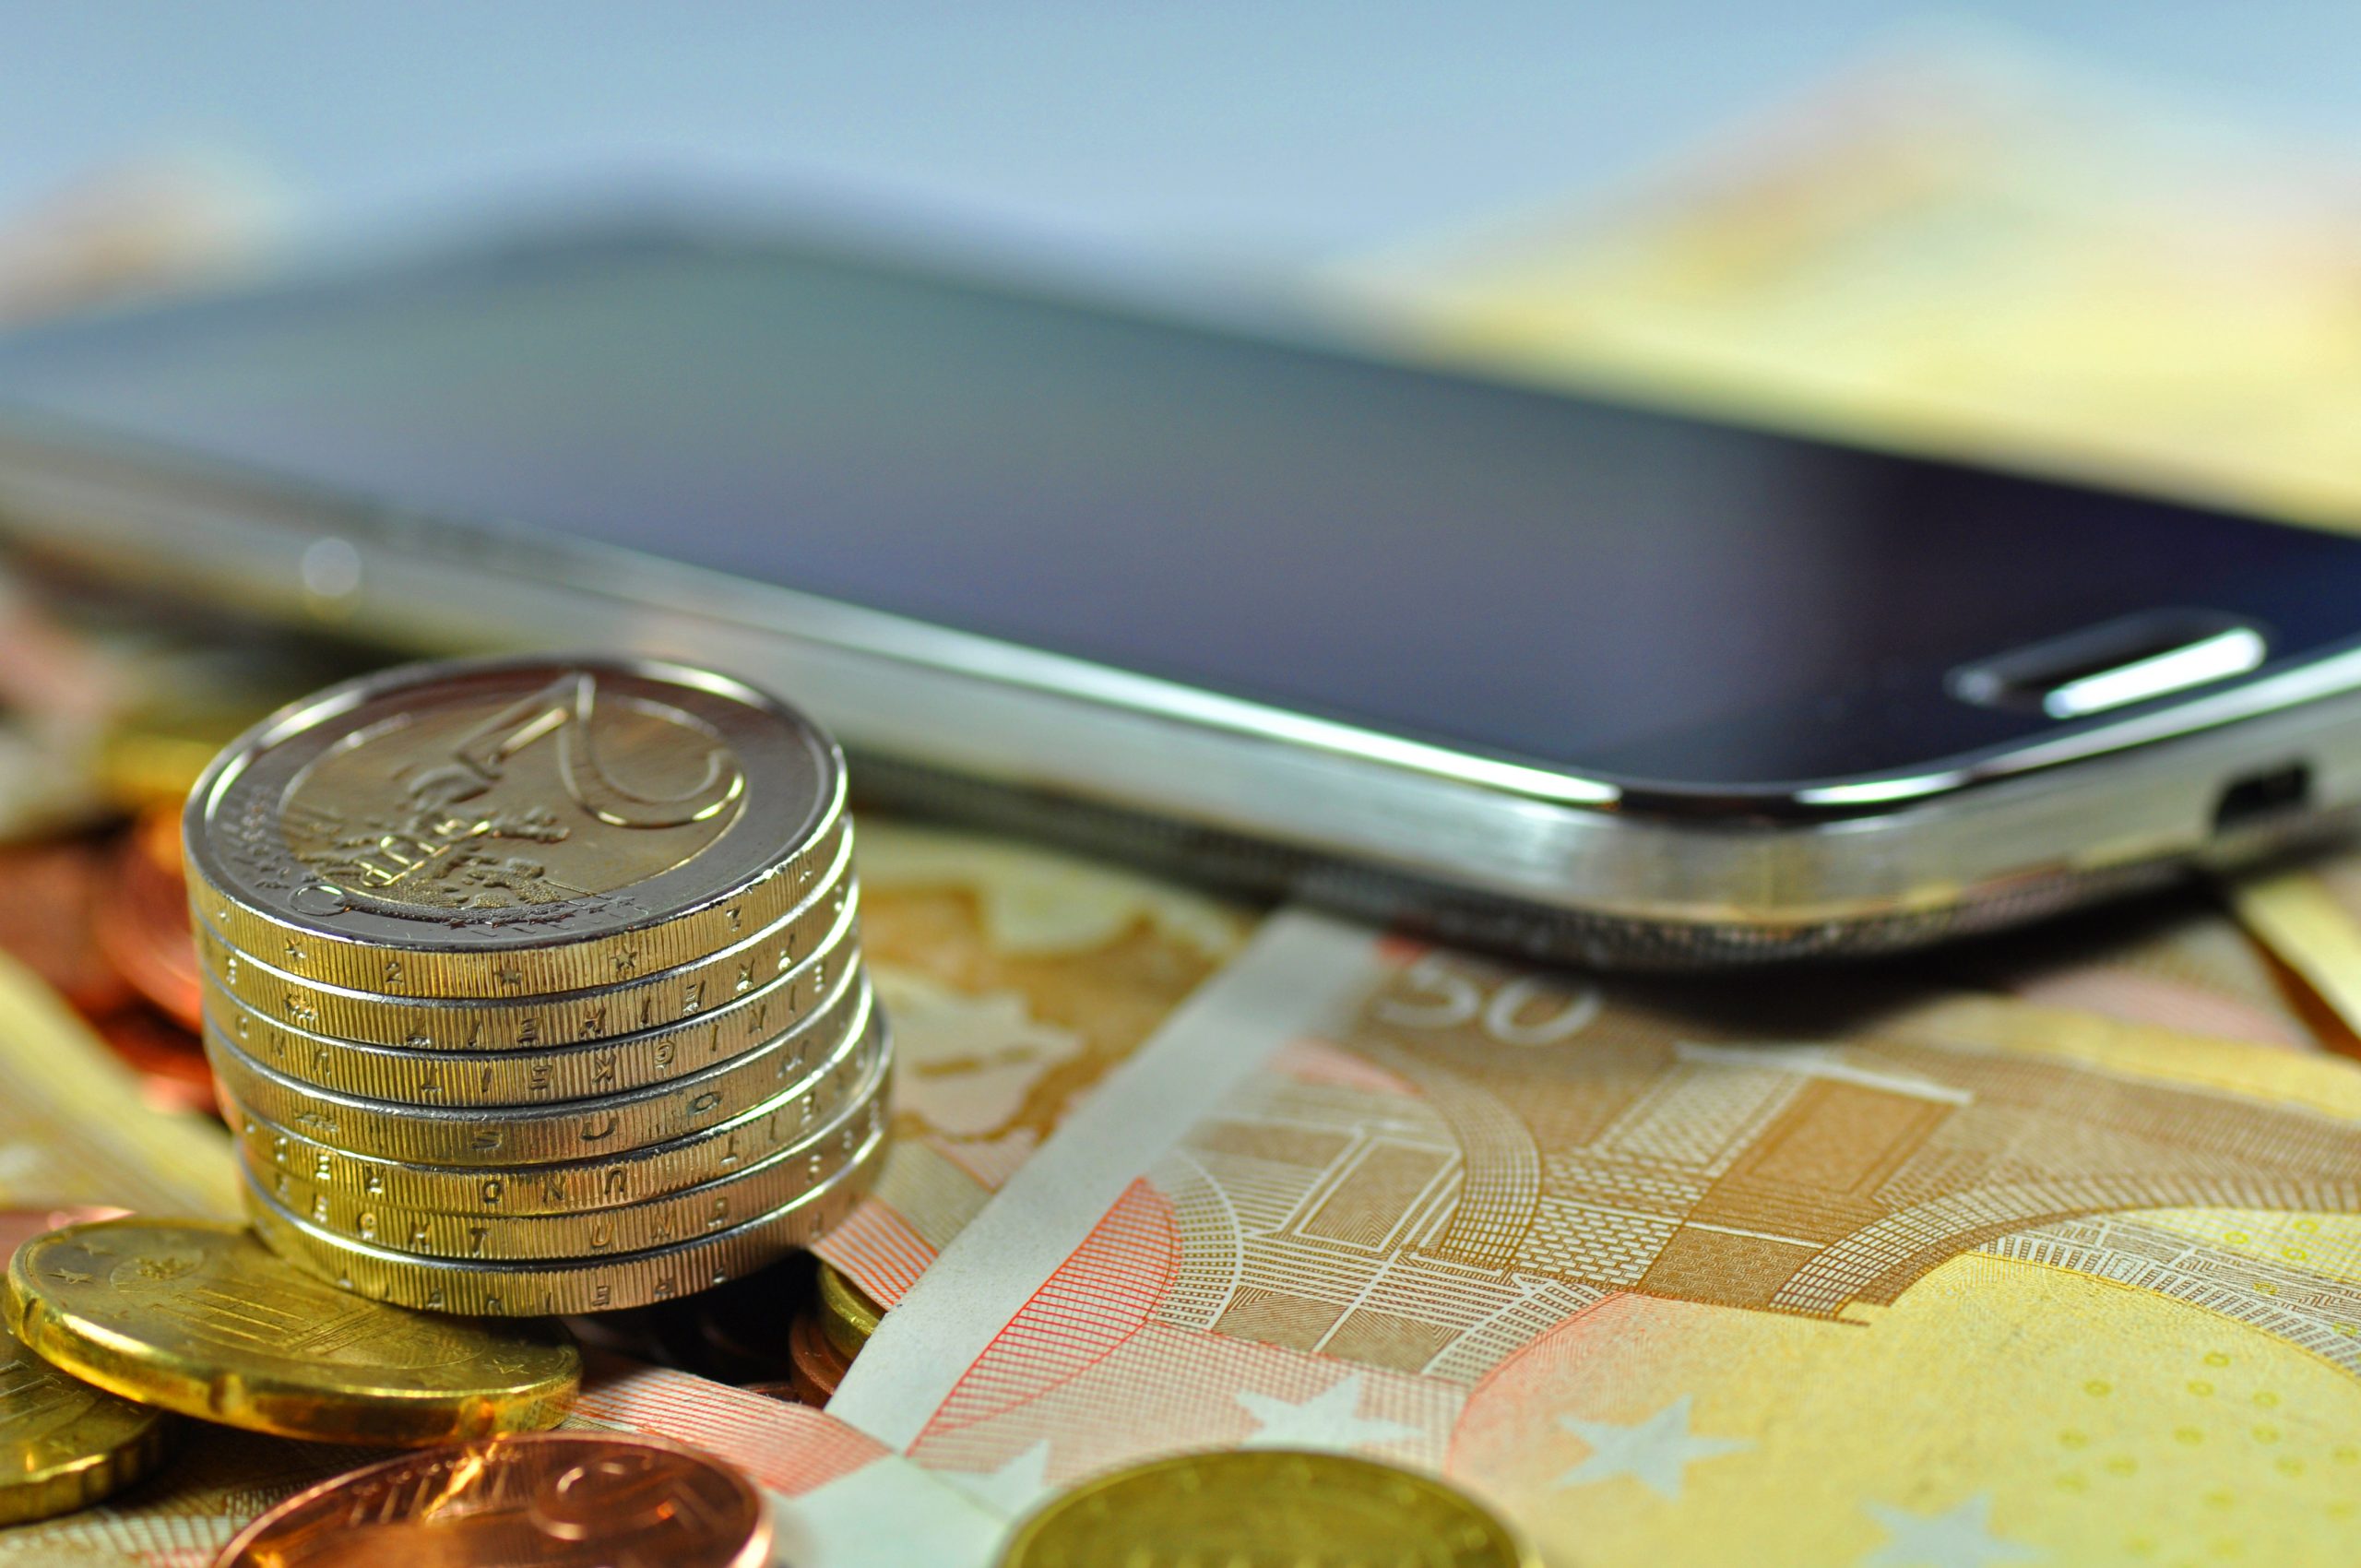 Smartphone liegt auf Geldscheinen und Münzenturm daneben